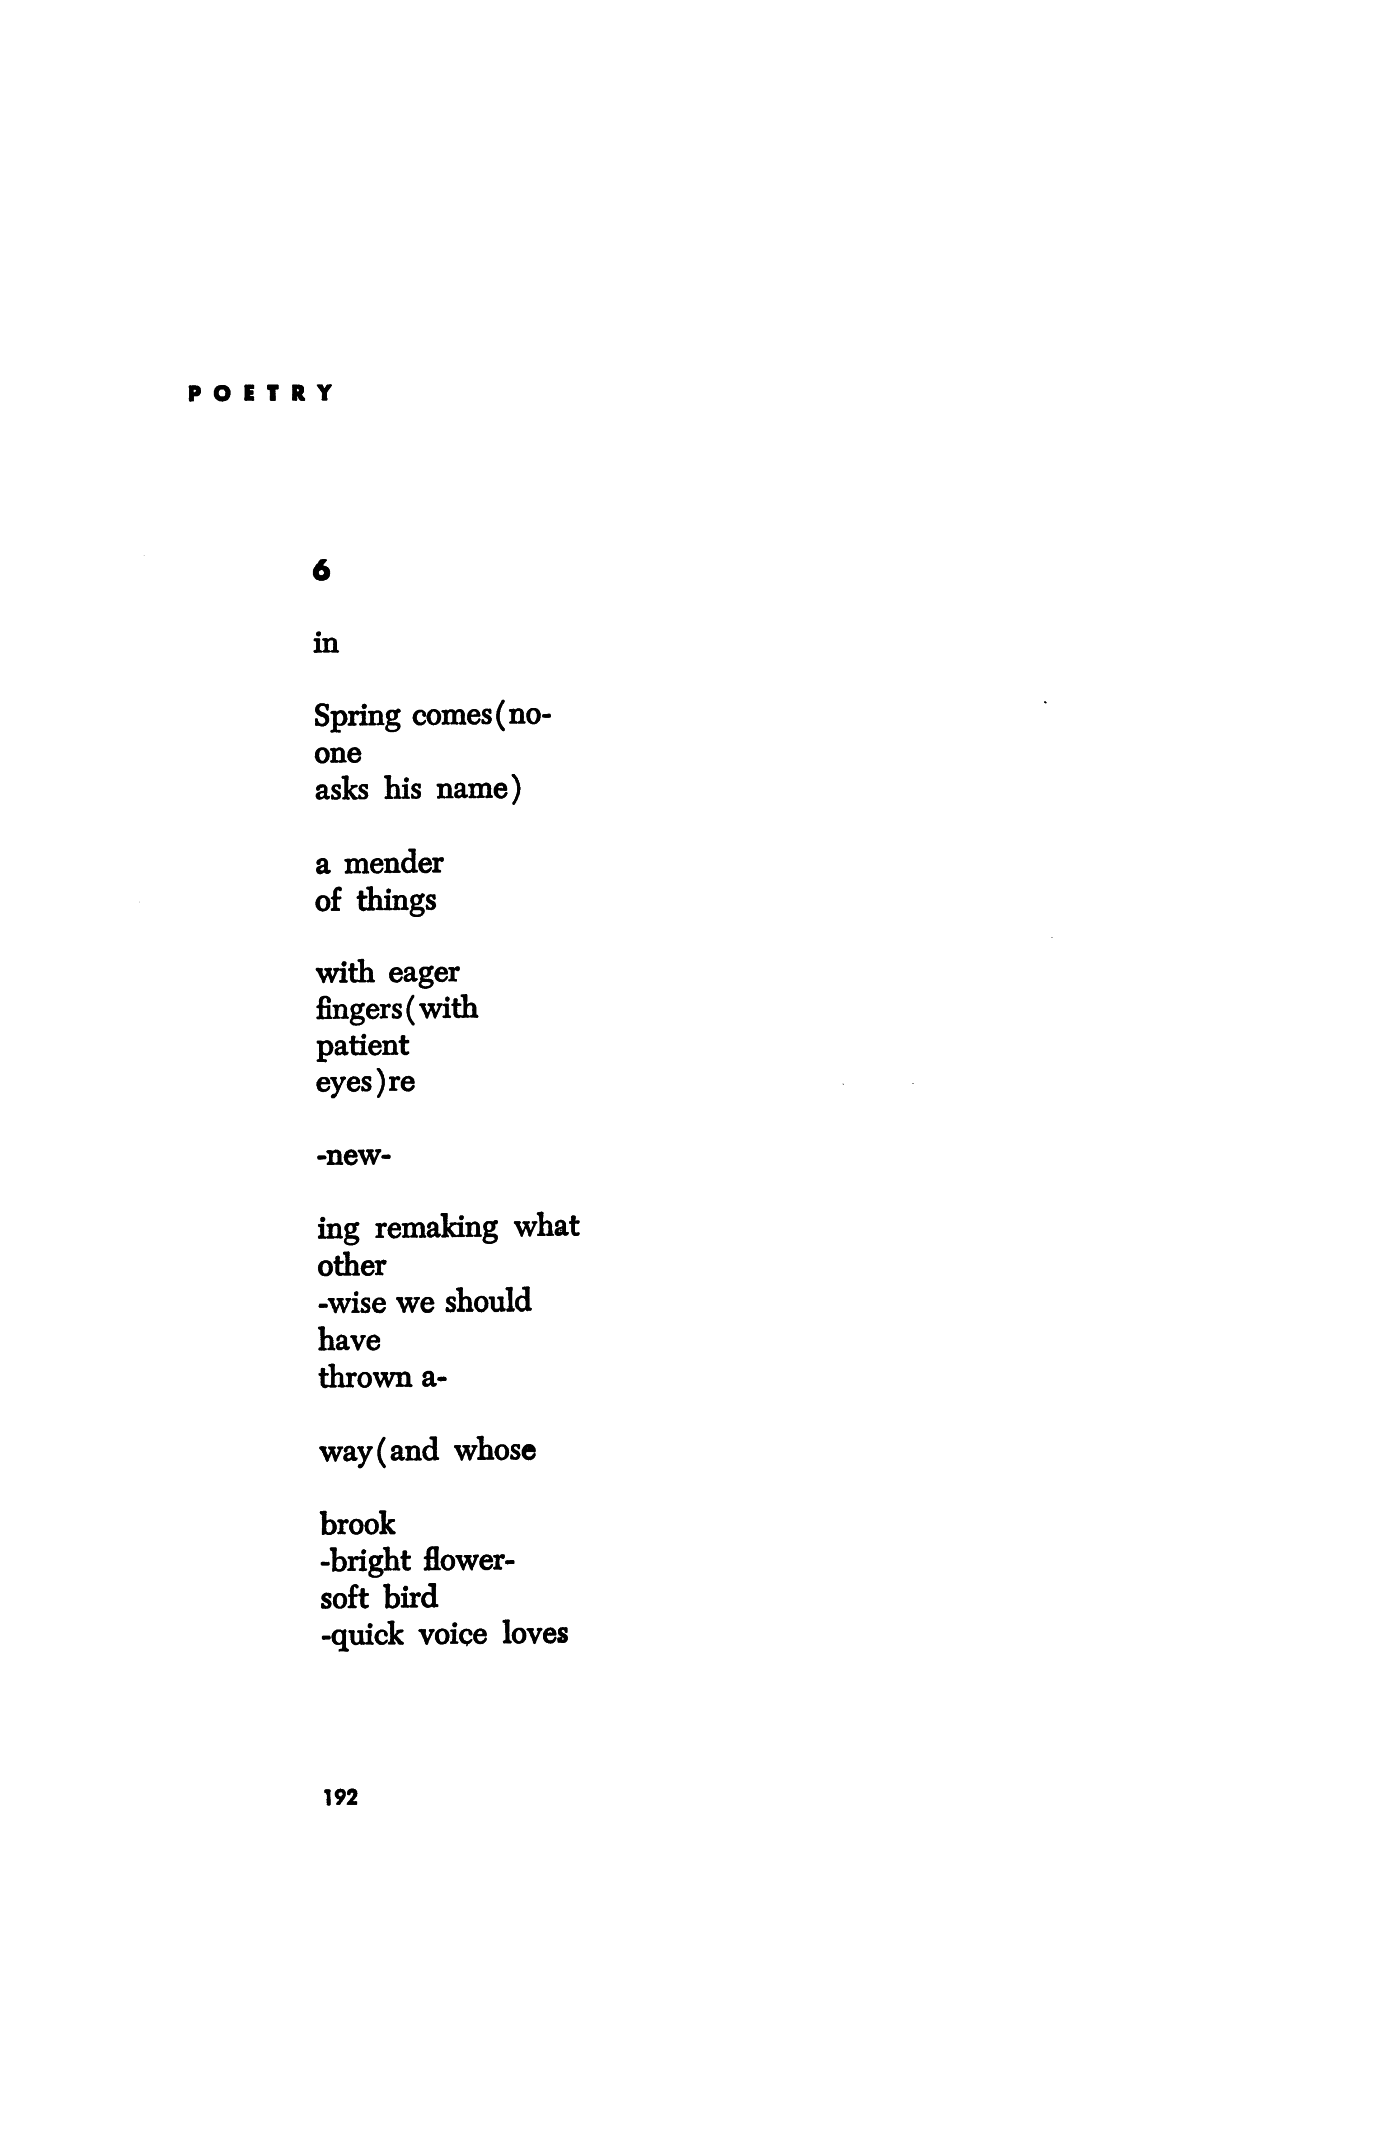 Ee cummins poem how to make nuance pdf default